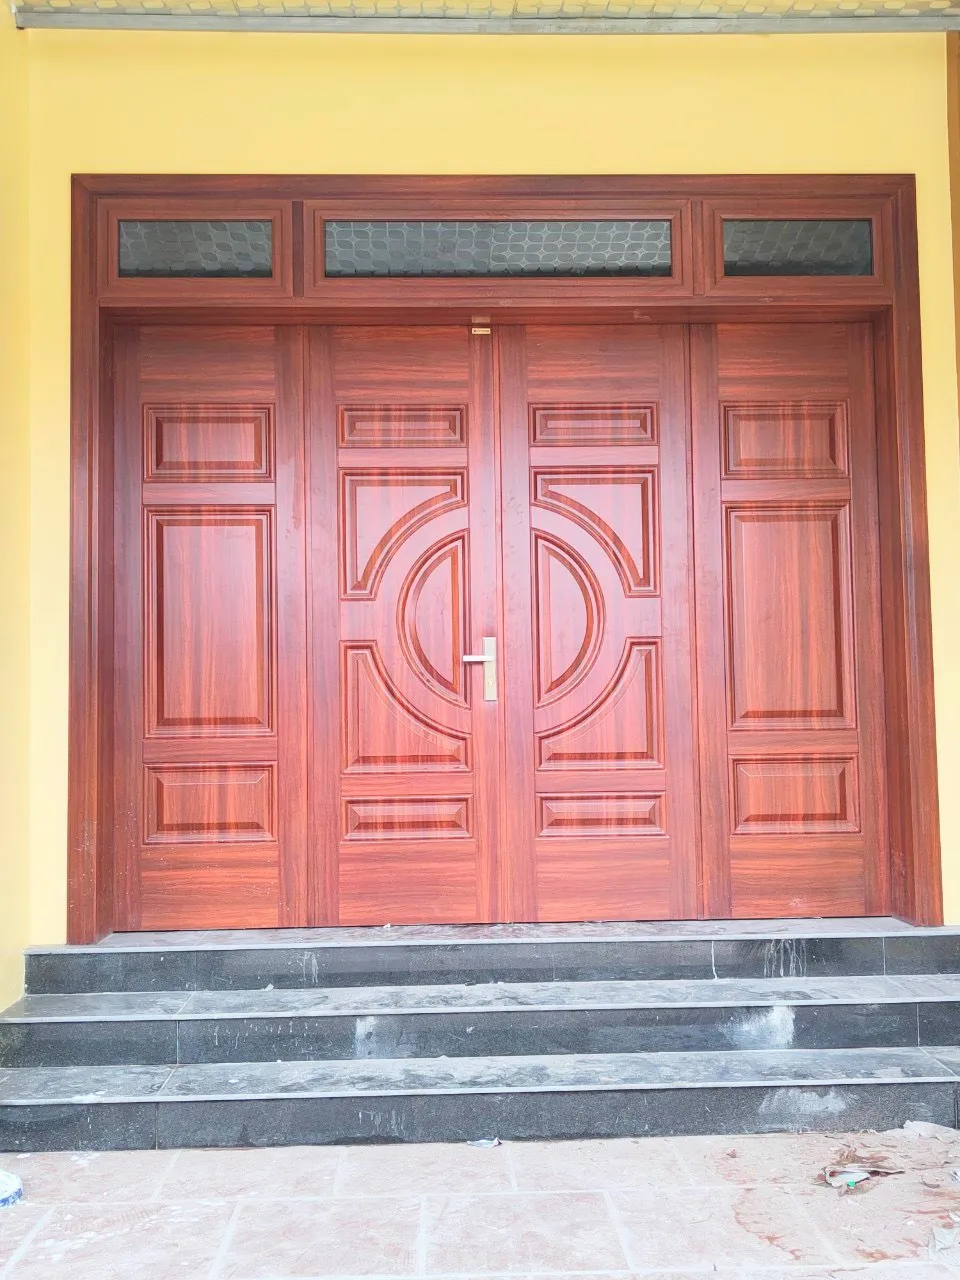 Báo giá cửa thép vân gỗ 4 cánh Thành phố Hội An - Quảng Nam